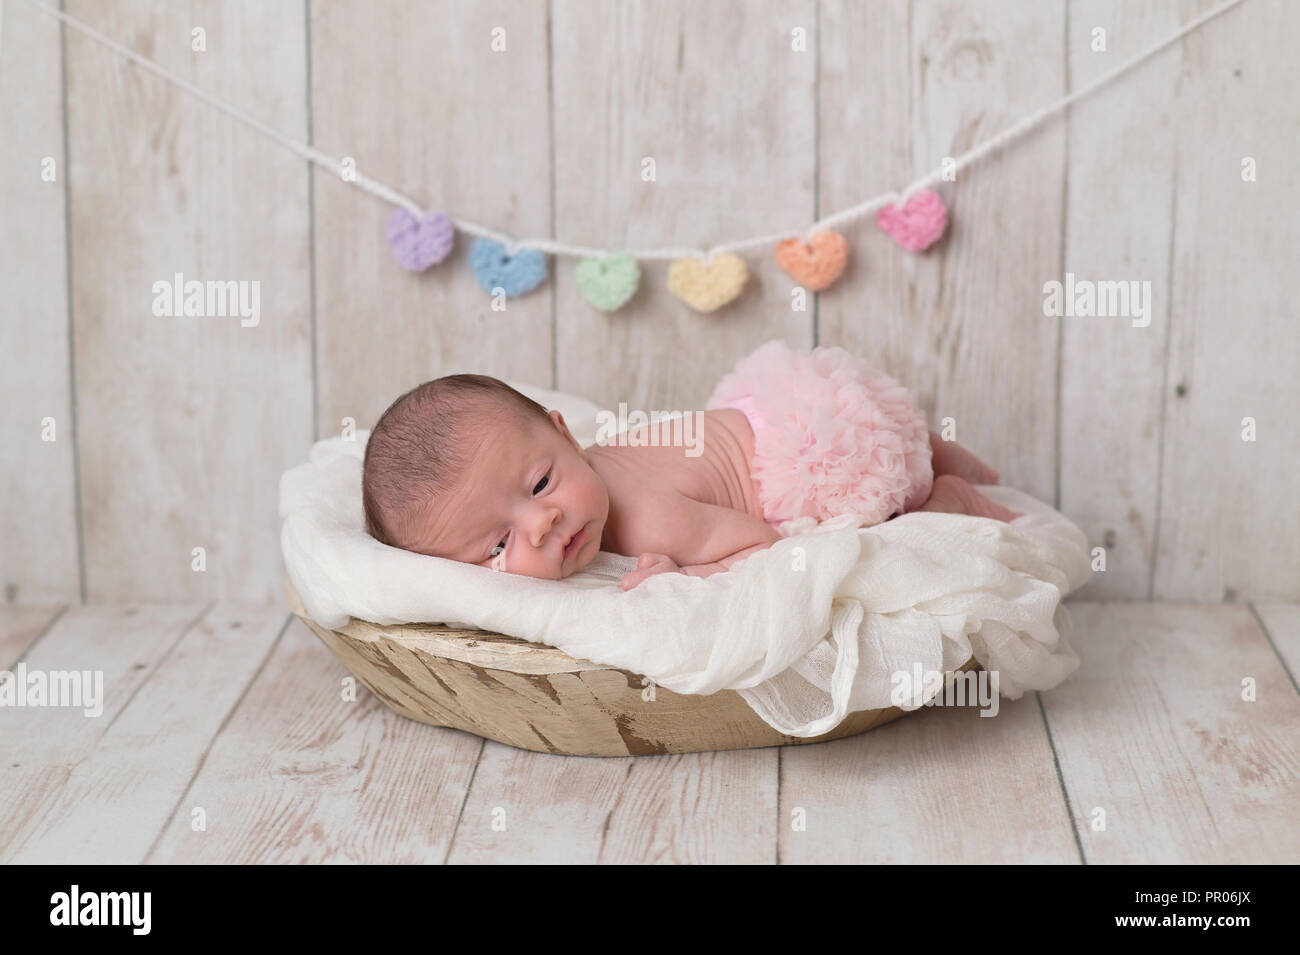 Retrato de una 2 semana de edad bebé vestida de volantes, Rosa panes. Está mintiendo en un recipiente de madera y hay un corazón garland en el fondo Foto de stock